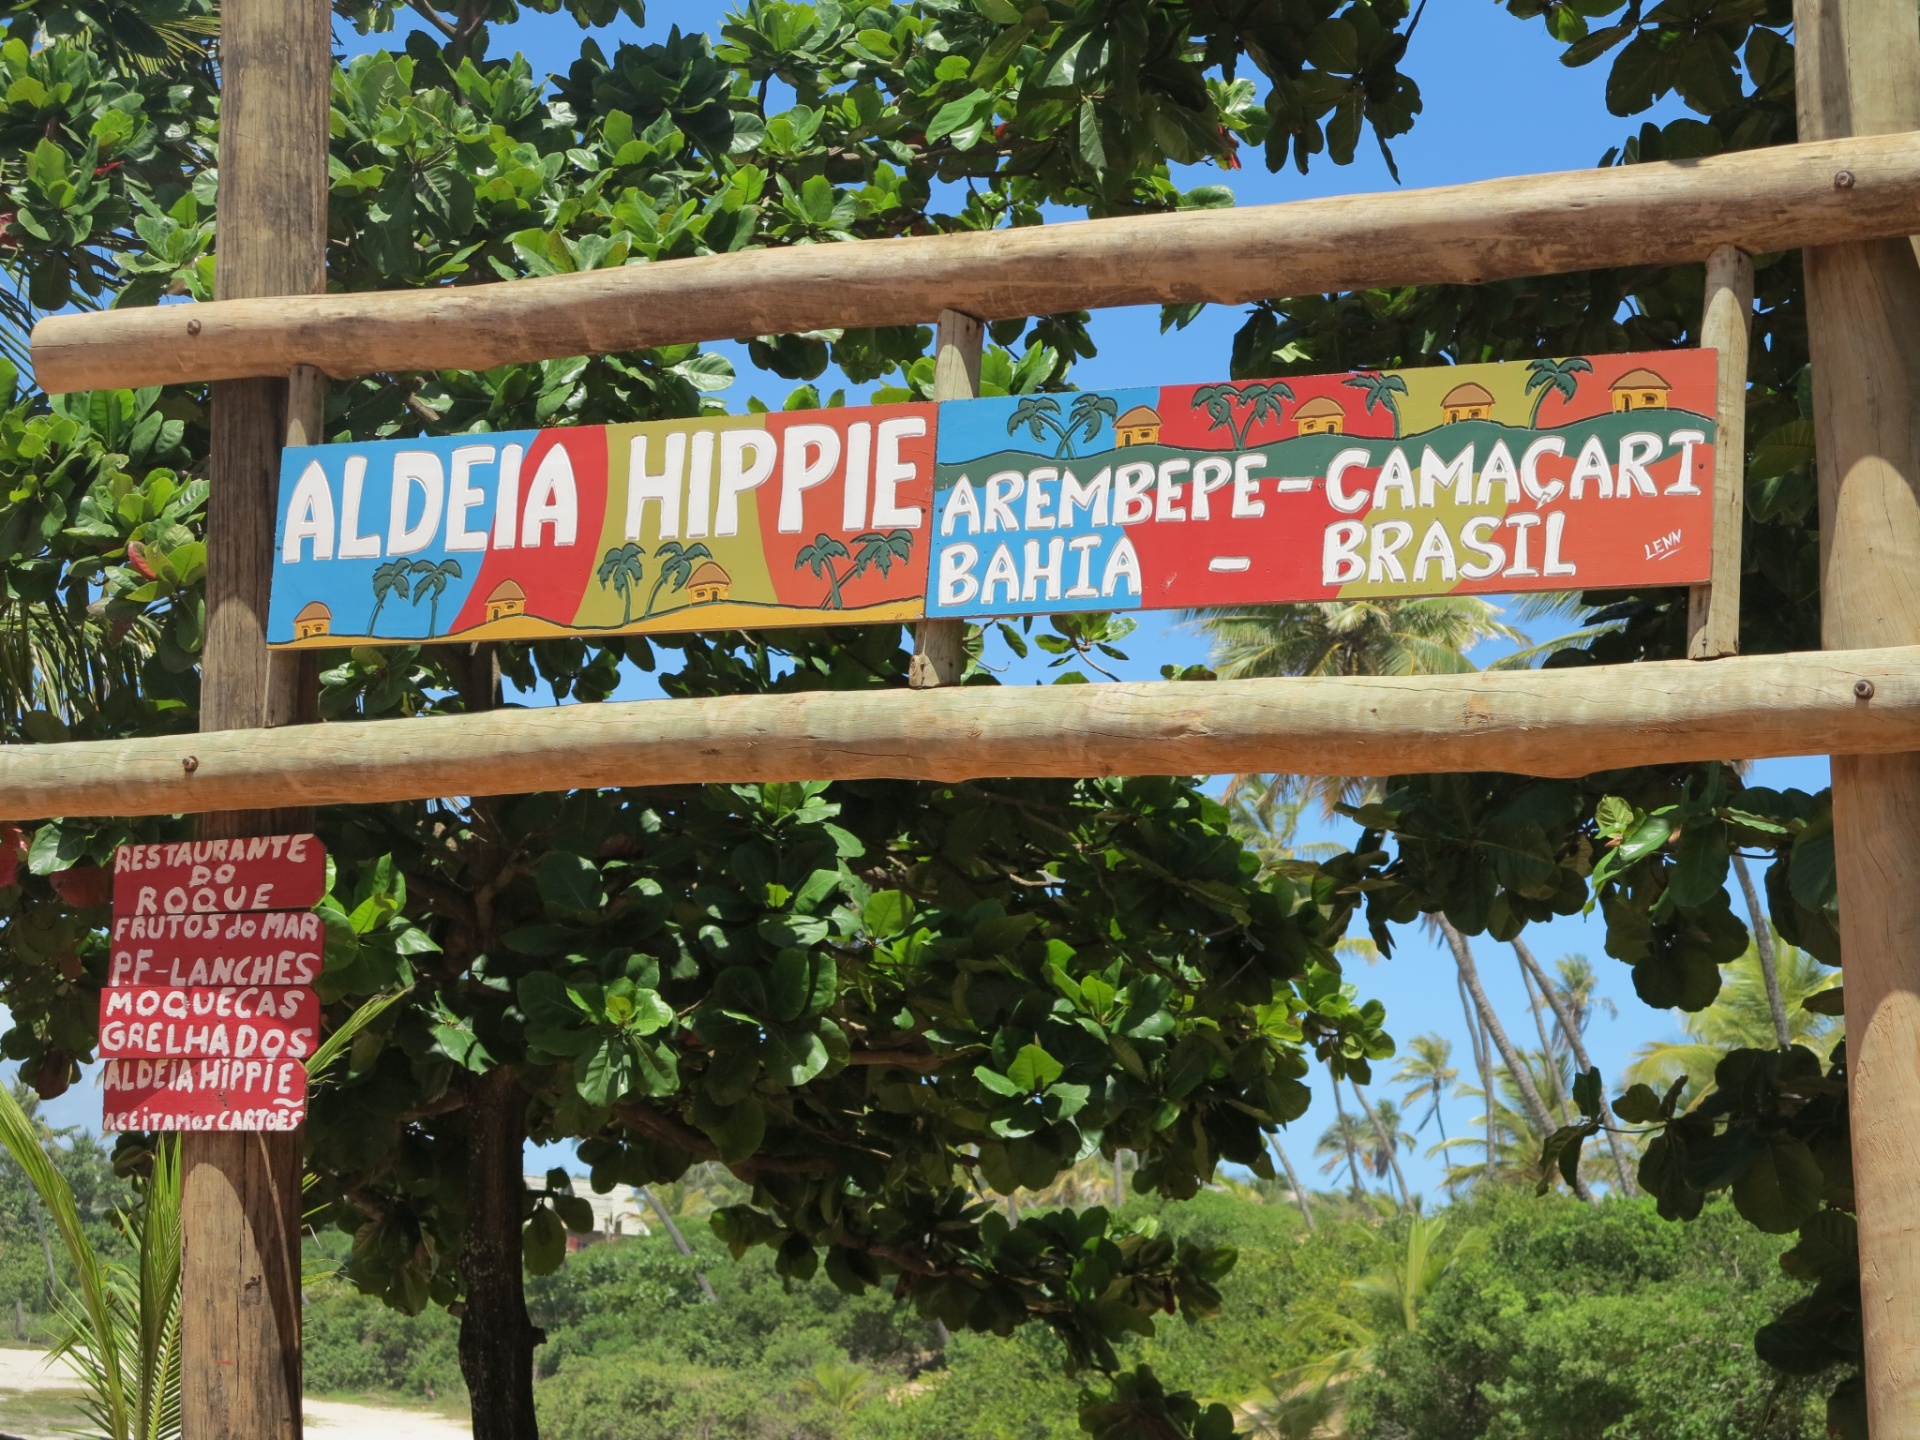 Placa anuncia a chegada à aldeia hippie depois de uma boa caminhada a pé, sem poder entrar de carro